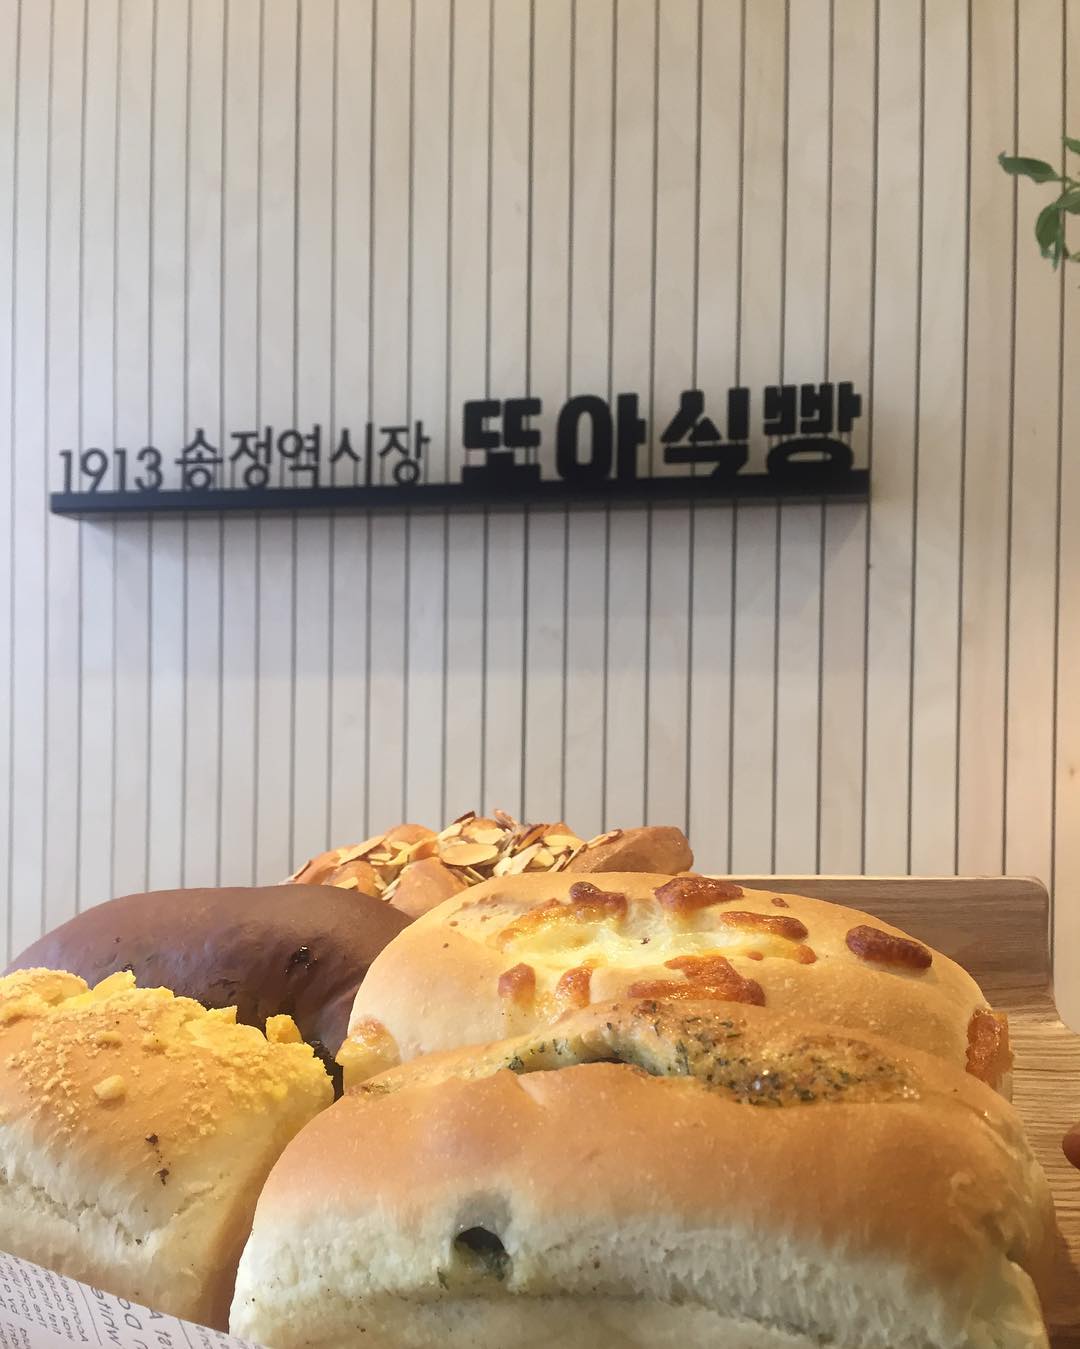 출처 : 또아식빵 인스타그램 검색 결과